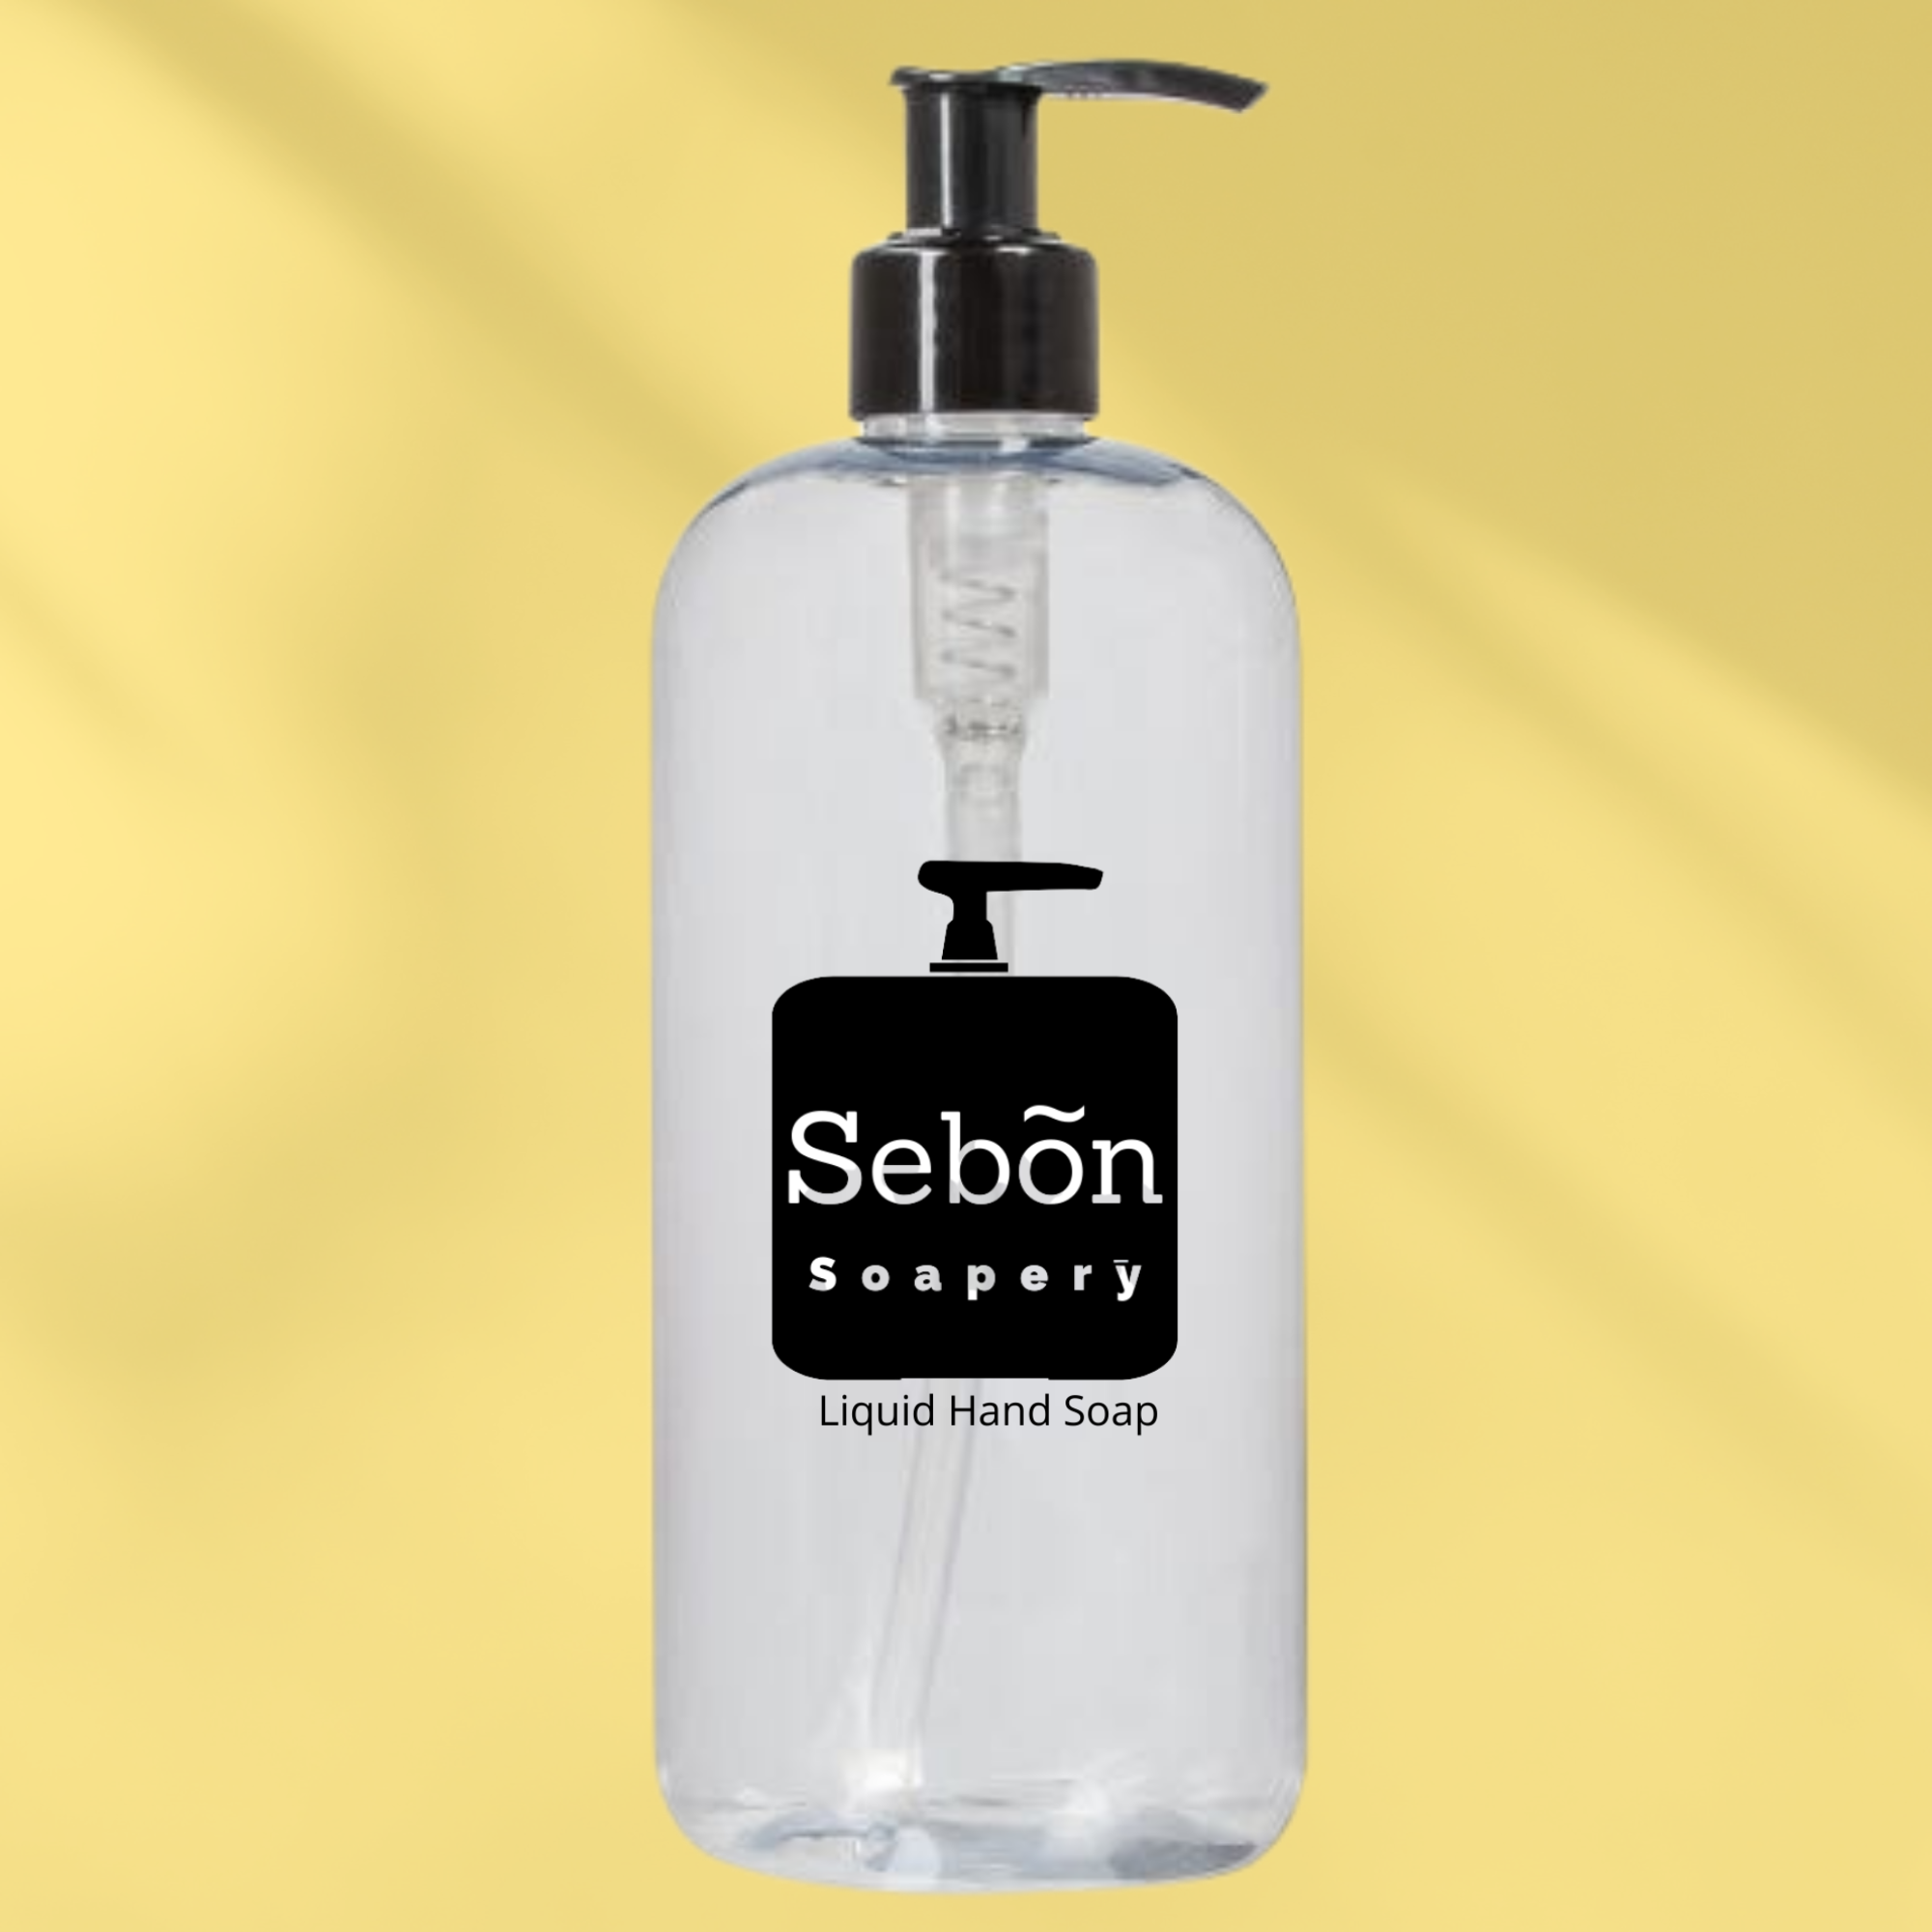 Sebon Aloha E Komo Mai Scented Scented Liquid Hand Soap with Olive Oil